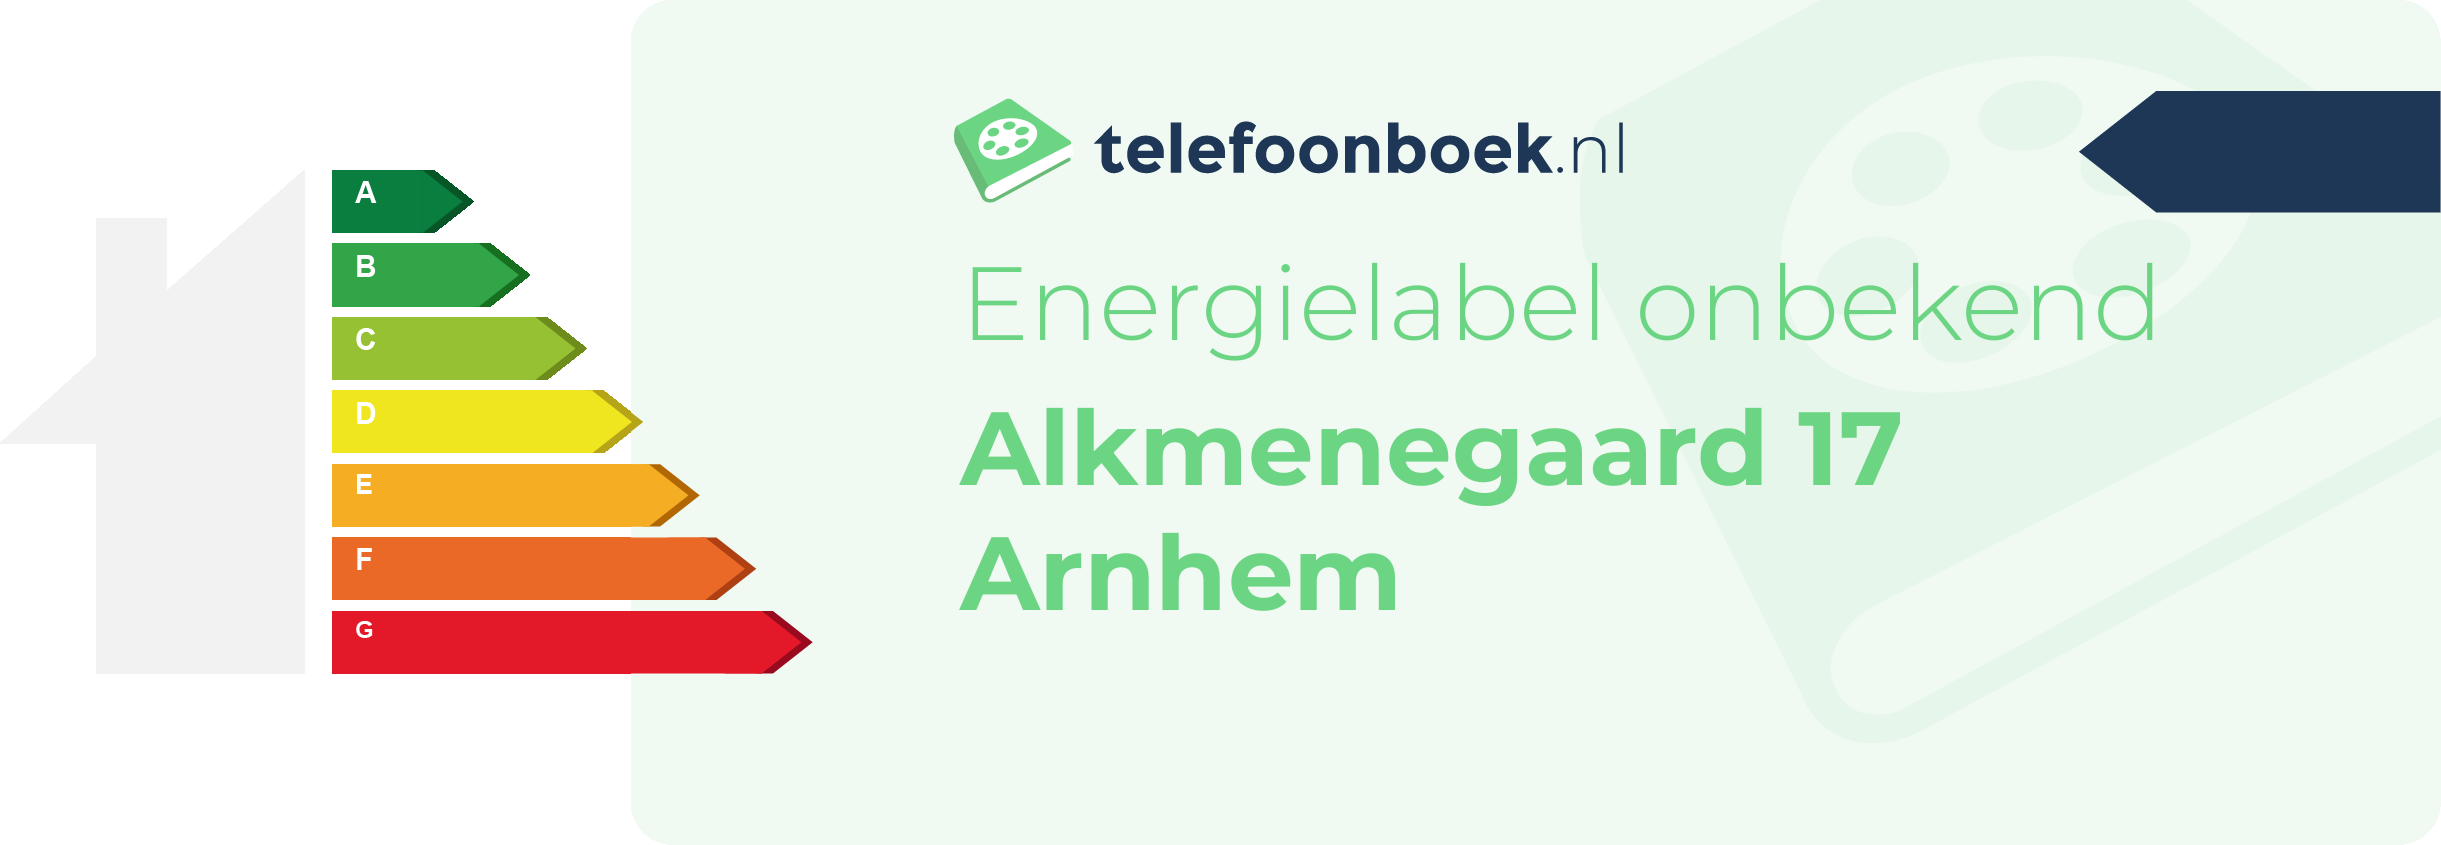 Energielabel Alkmenegaard 17 Arnhem